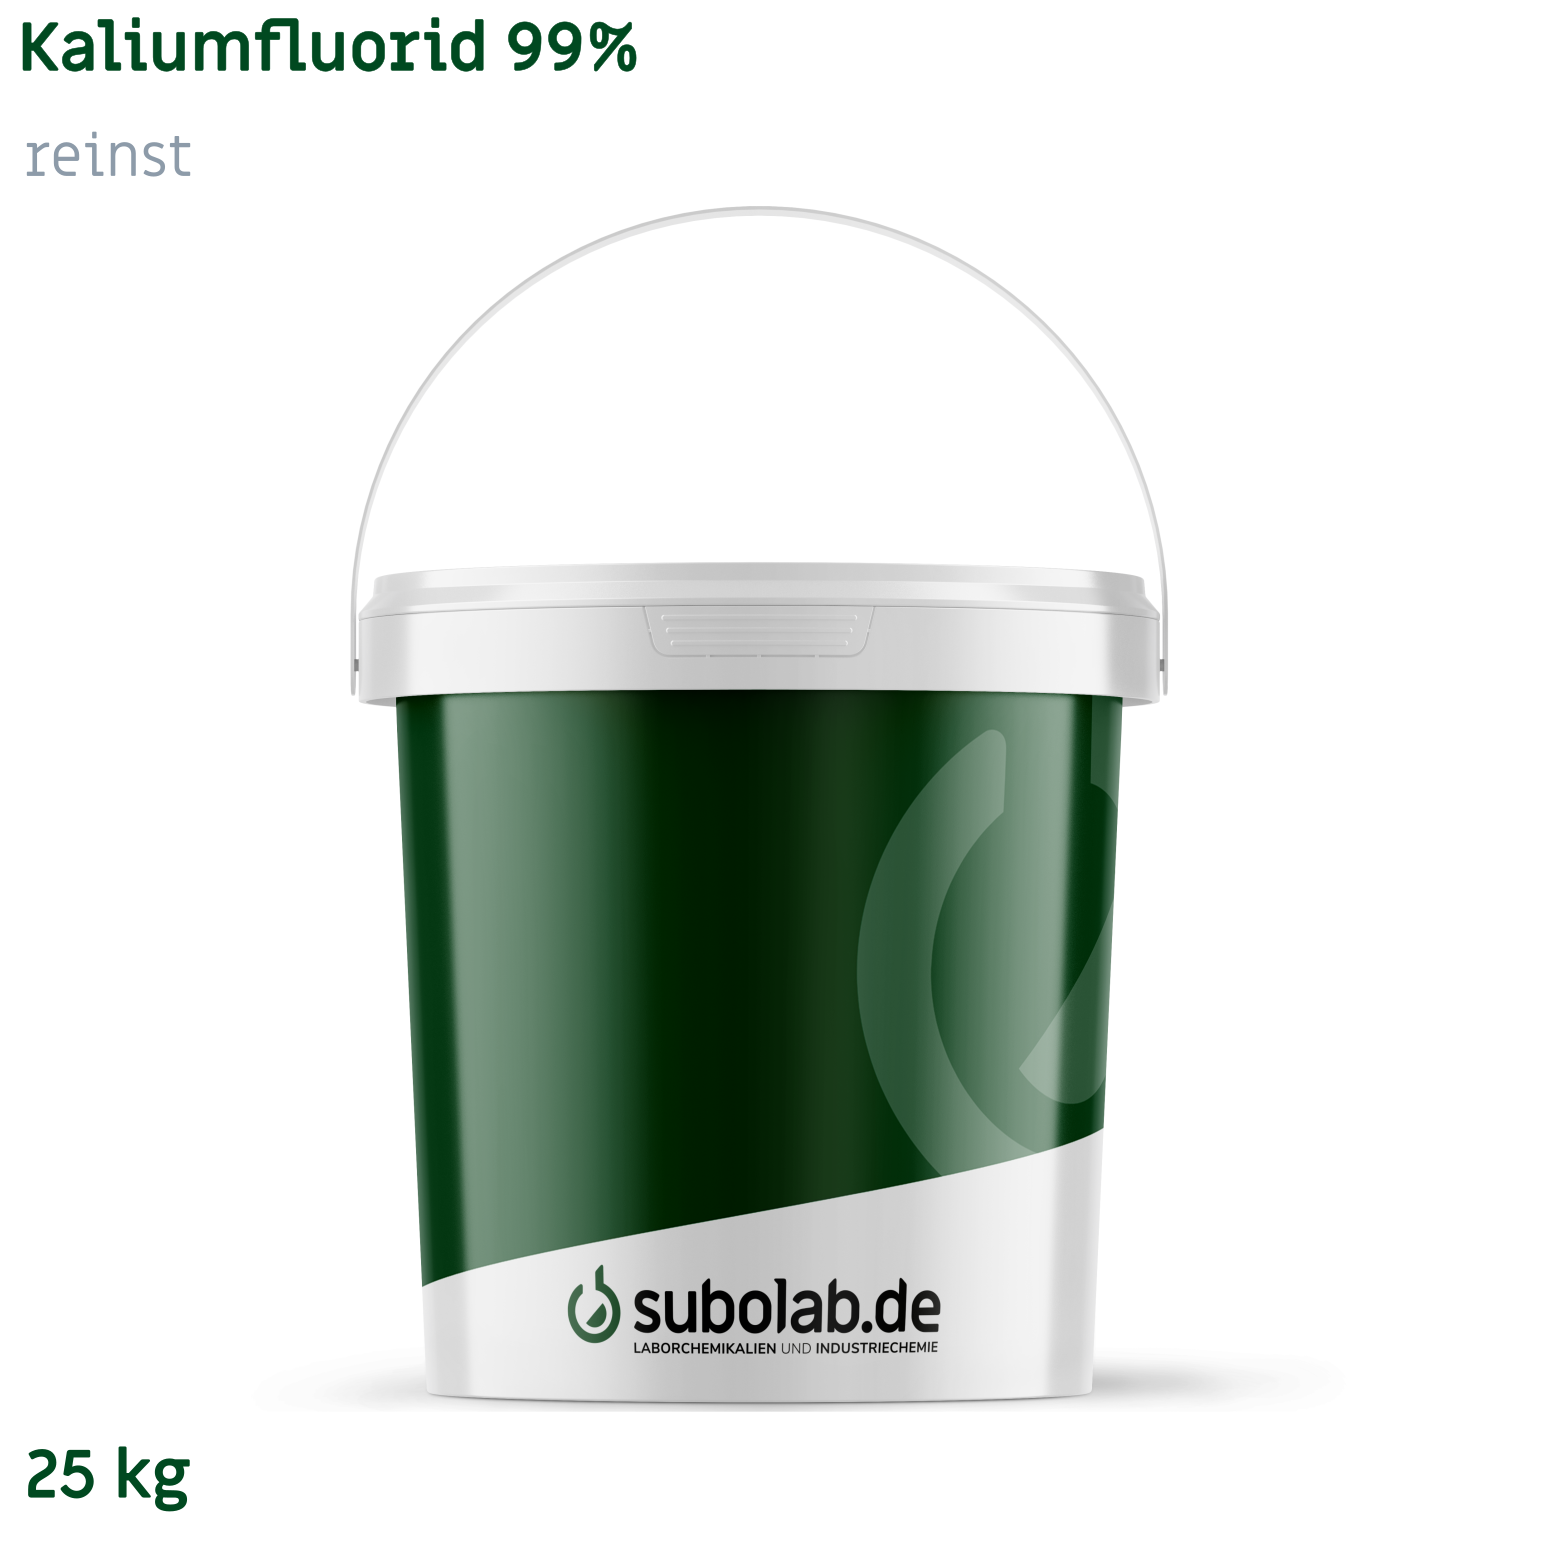 Bild von Kaliumfluorid 99% reinst (25 kg)